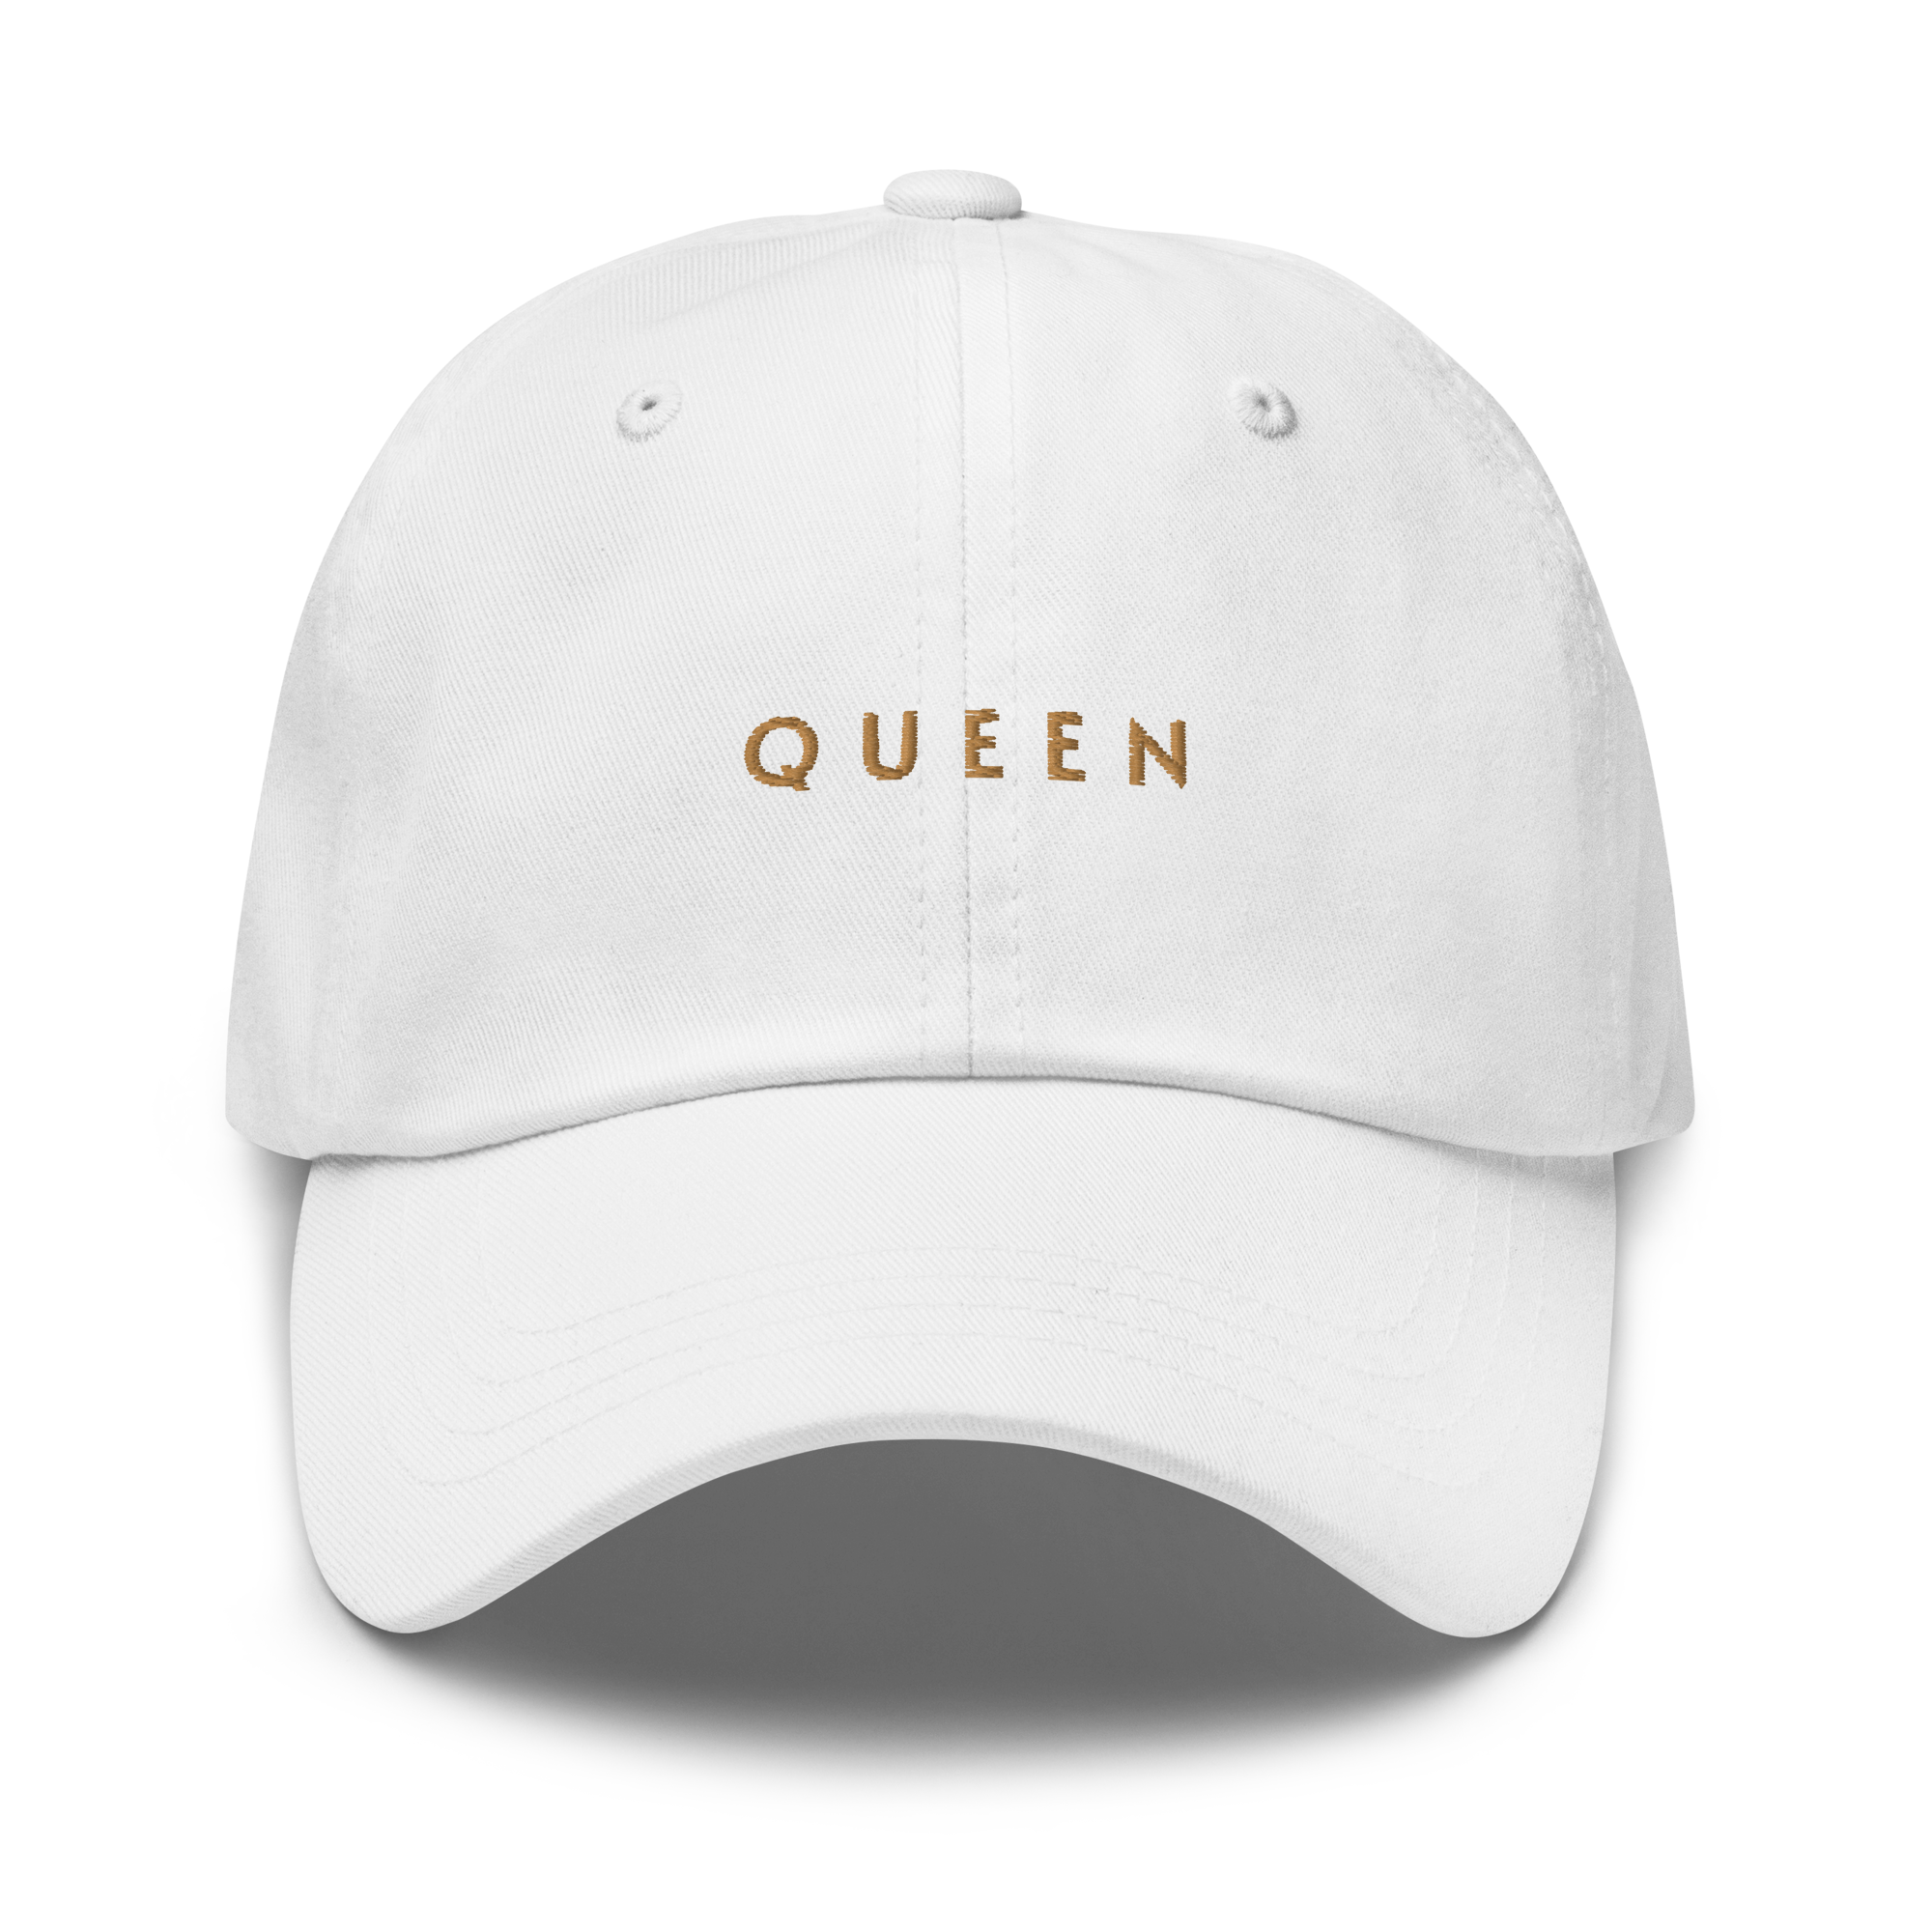 Queen Cap